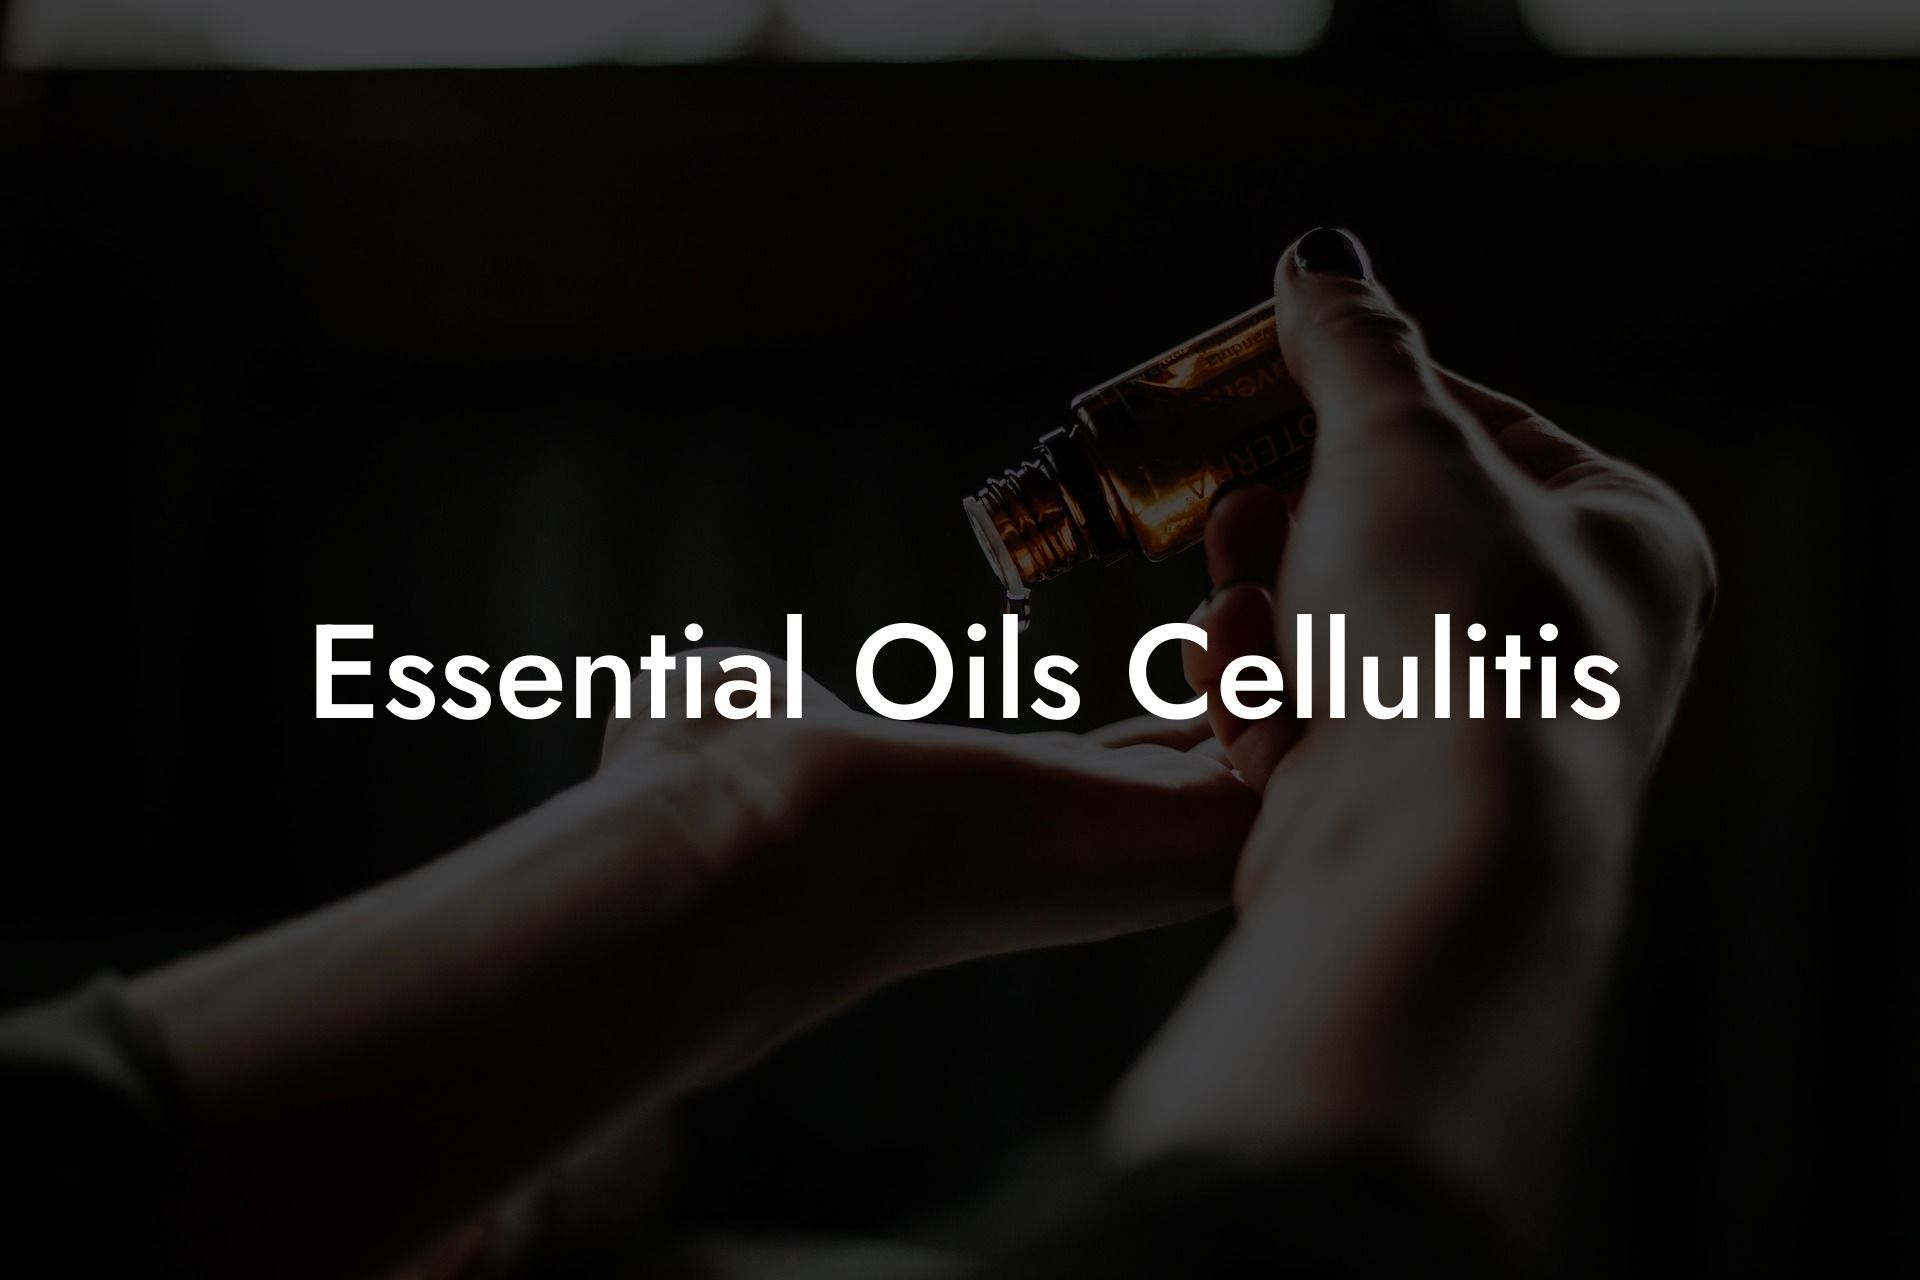 Essential Oils Cellulitis